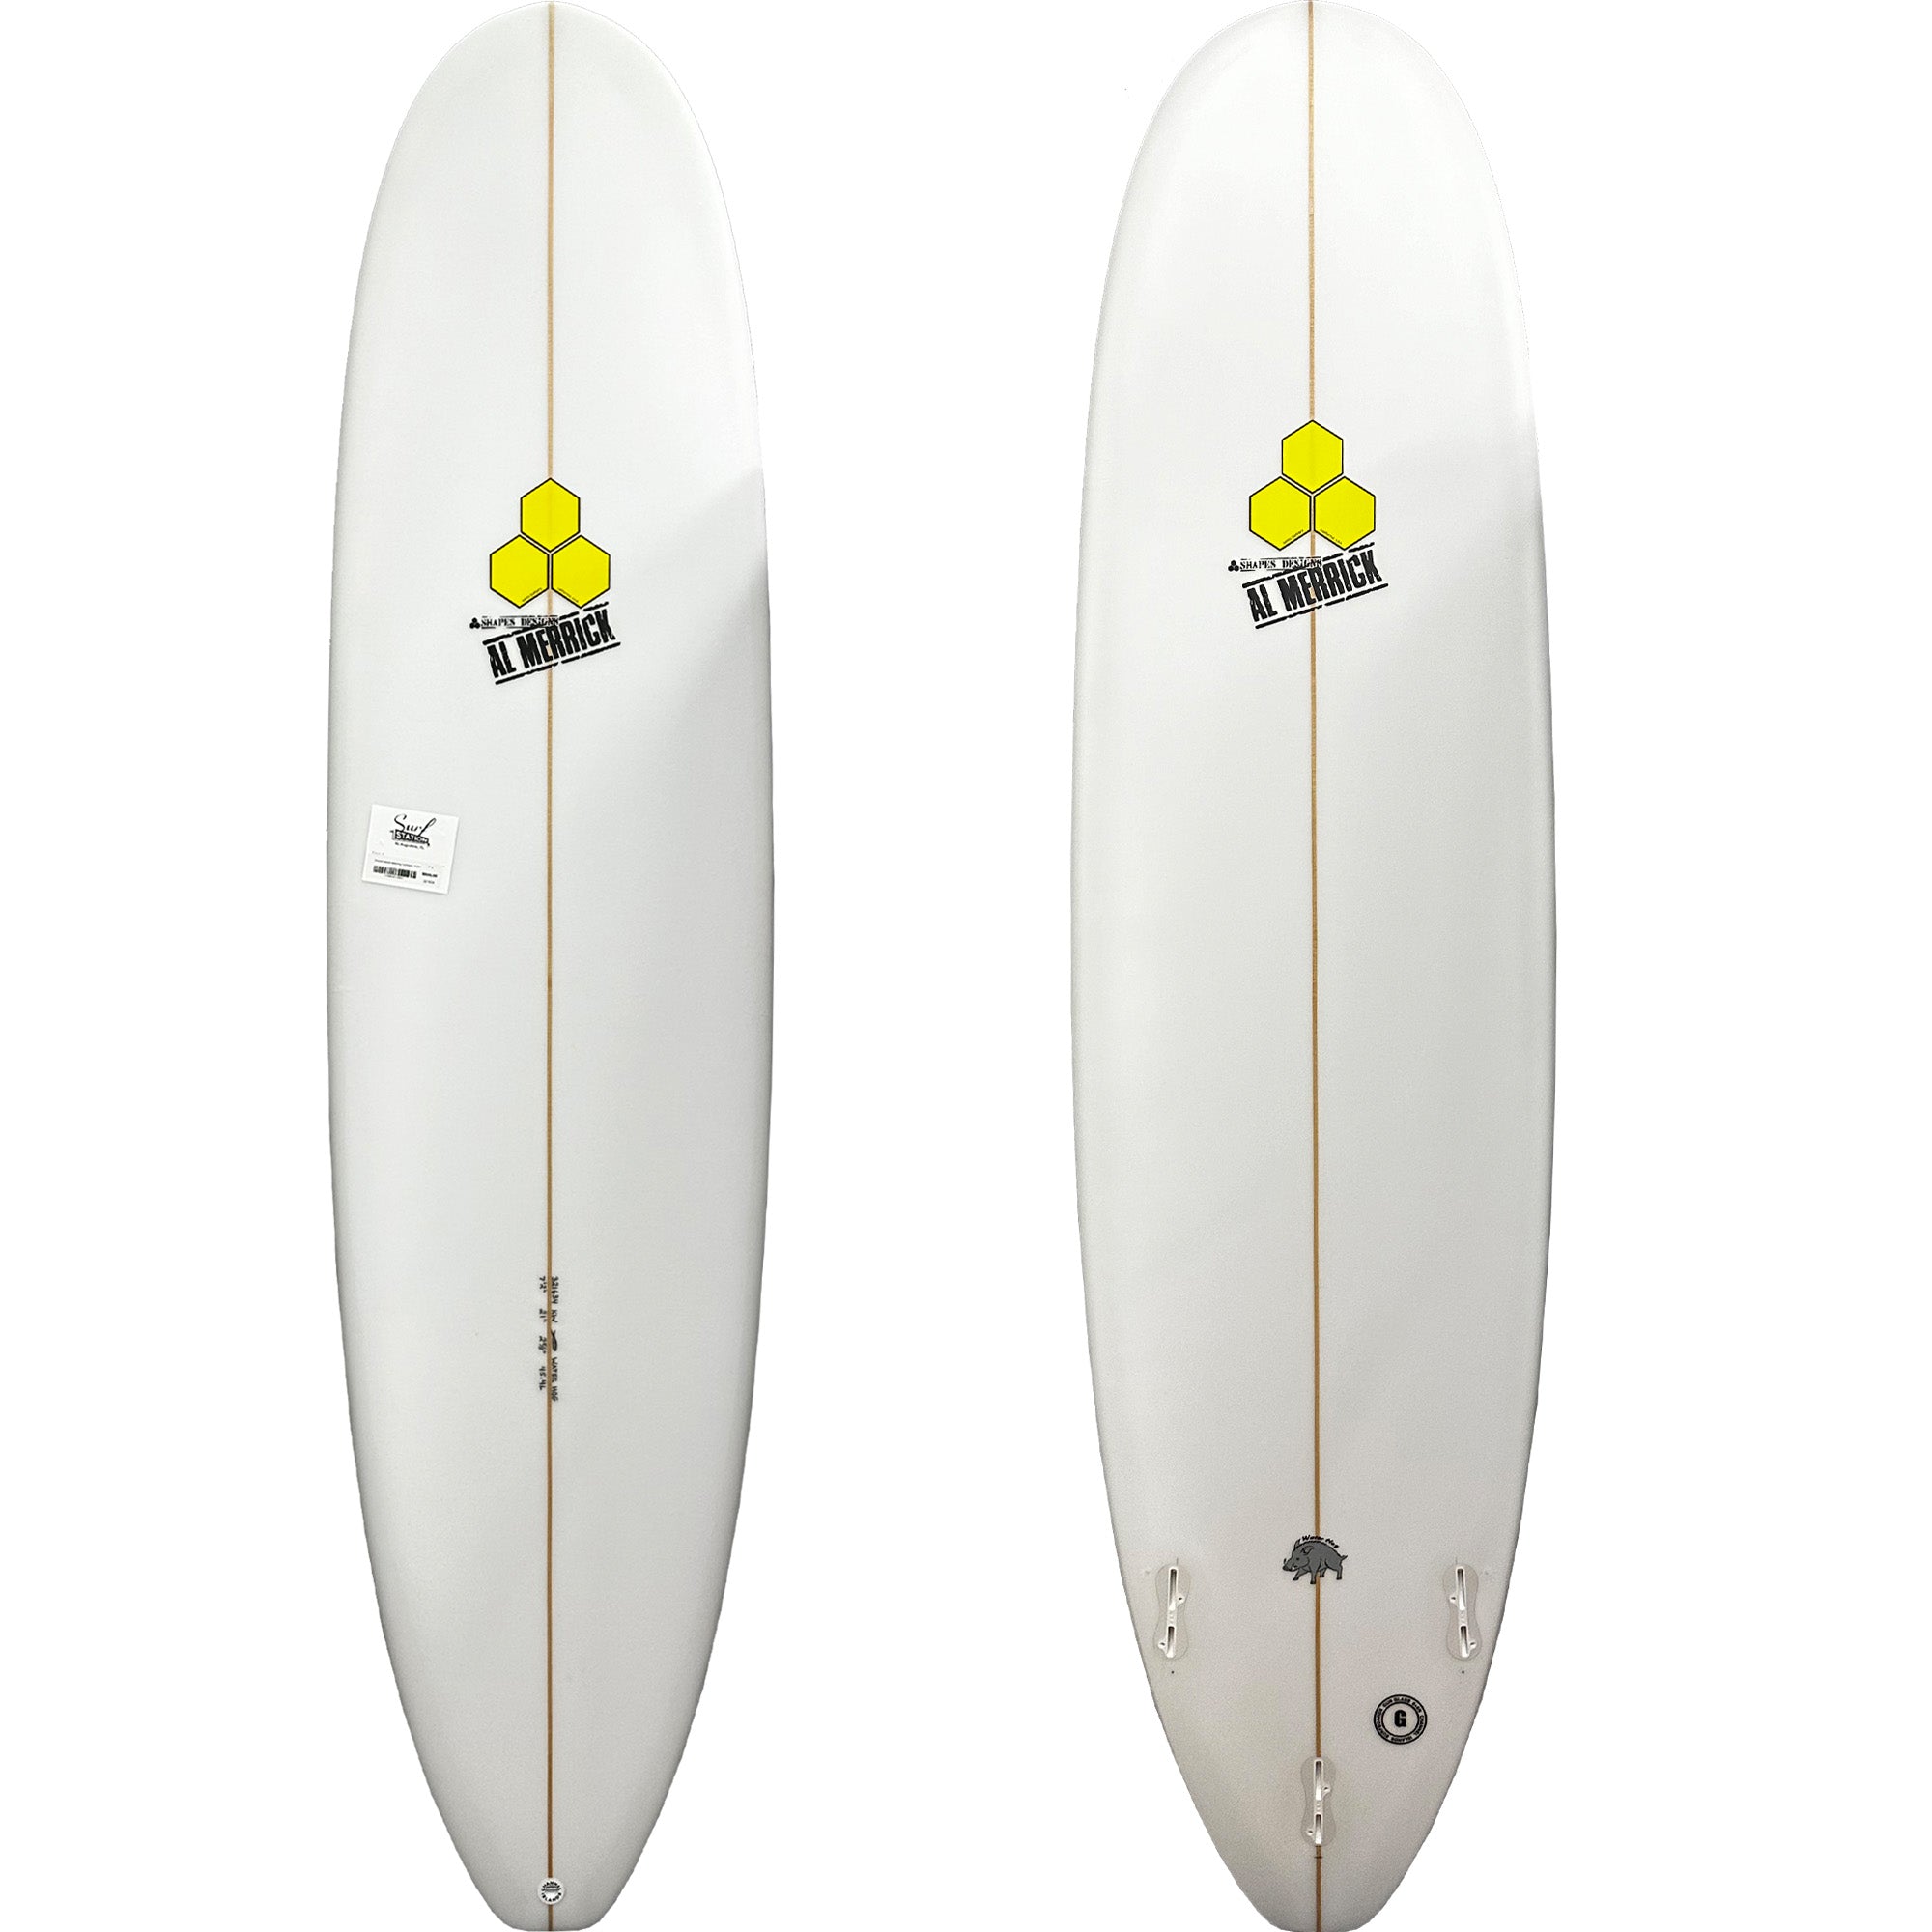 Channel Islands Waterhog Surfboard - FCS II